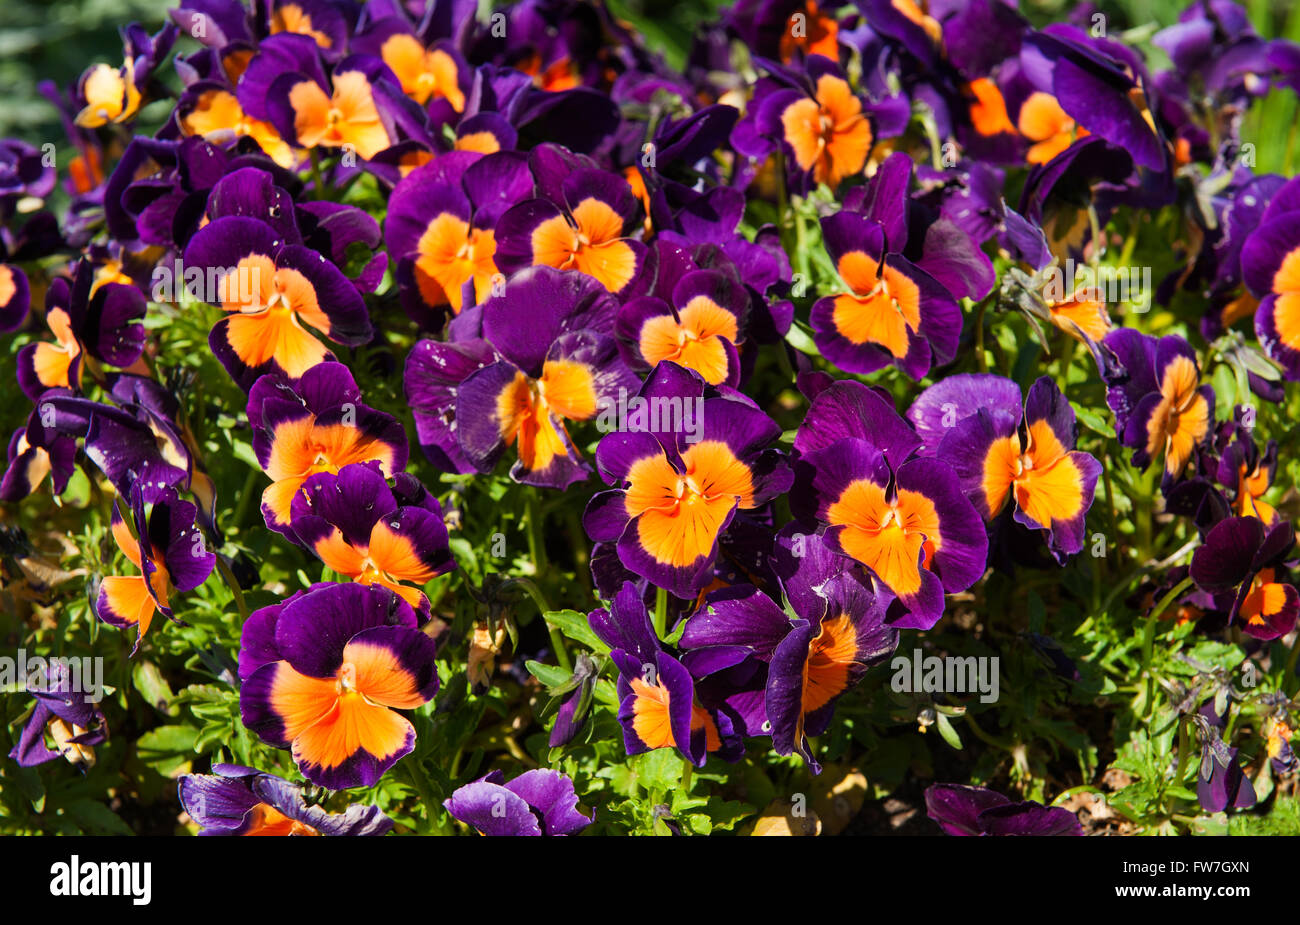 Rosa y flores de naranja en el jardín nombre latino Viola tricolor Foto de stock